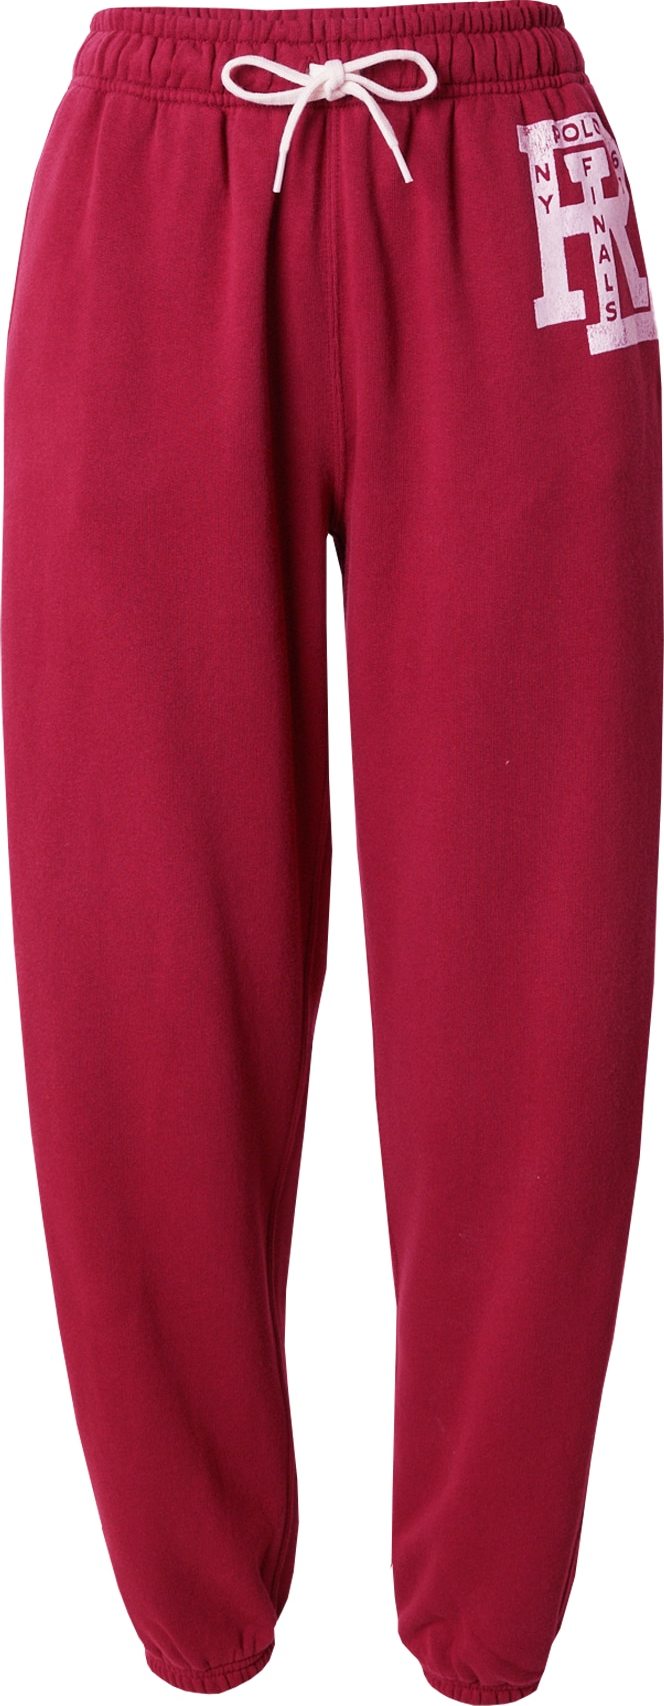 Kalhoty 'FINAL' Polo Ralph Lauren vínově červená / bílá